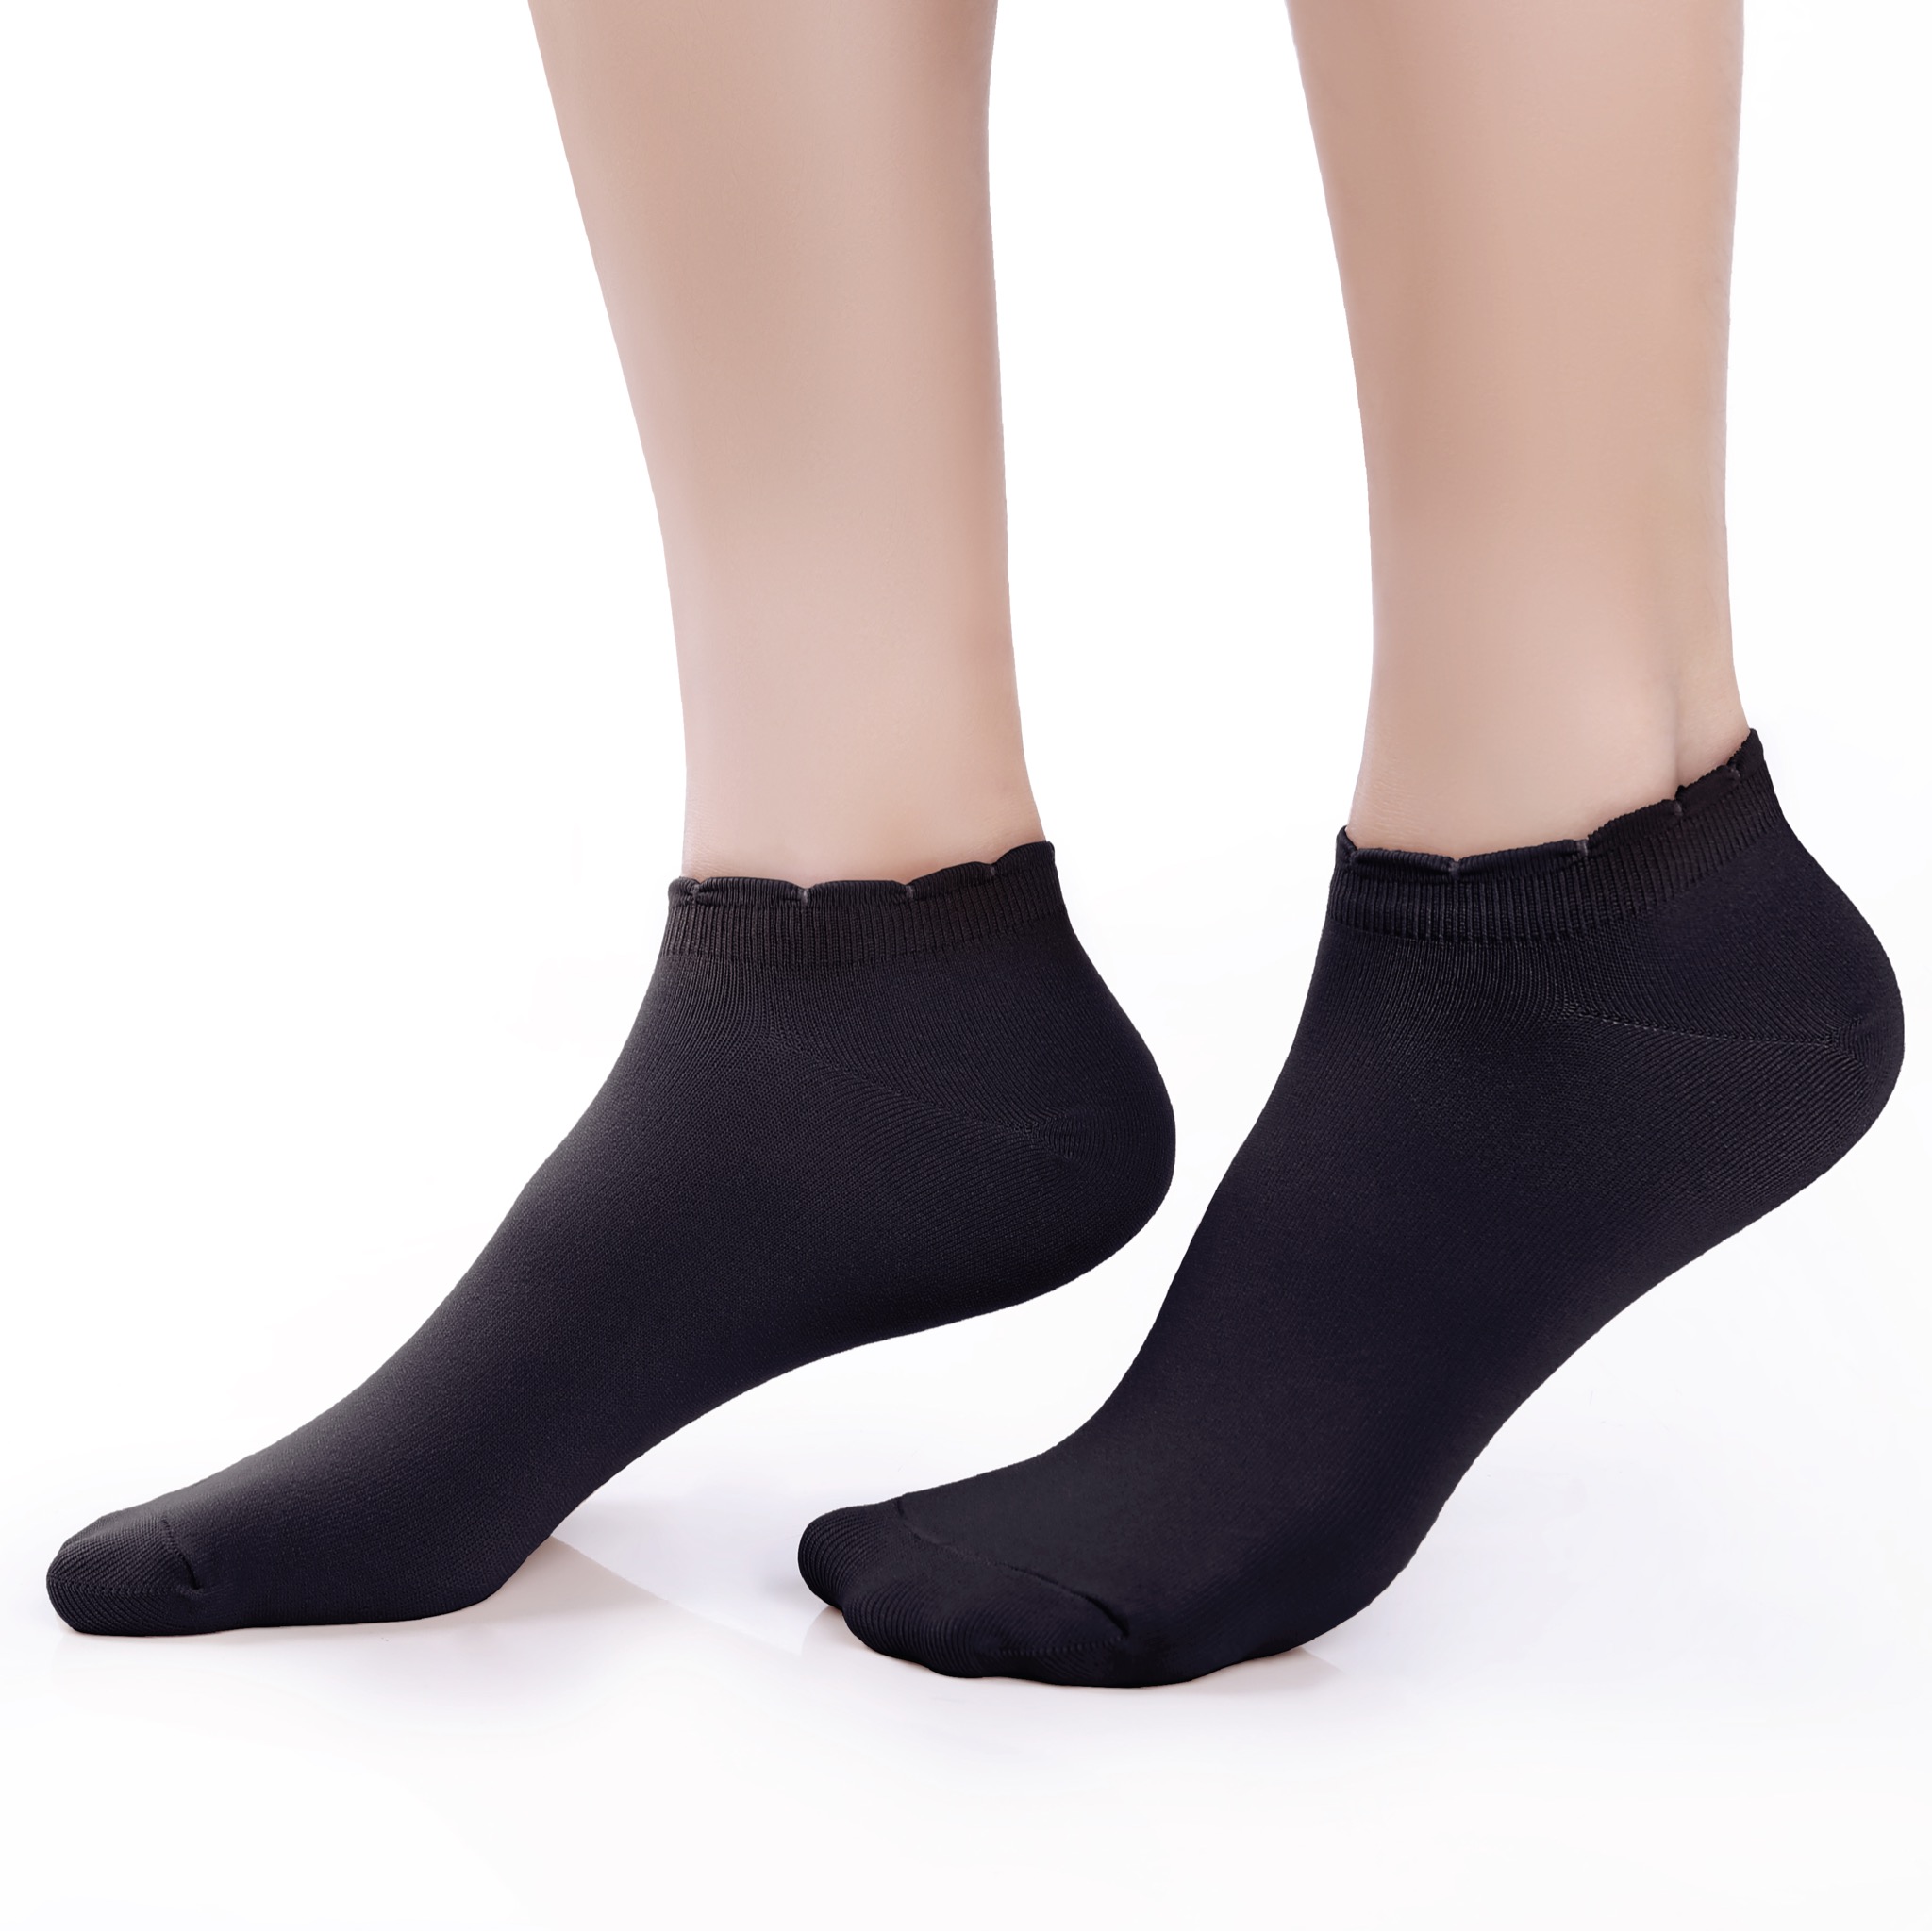 ถุงเท้ารองส้นเนื้อหนา ปิดหน้าเท้า สีดำ รหัส NEFC04